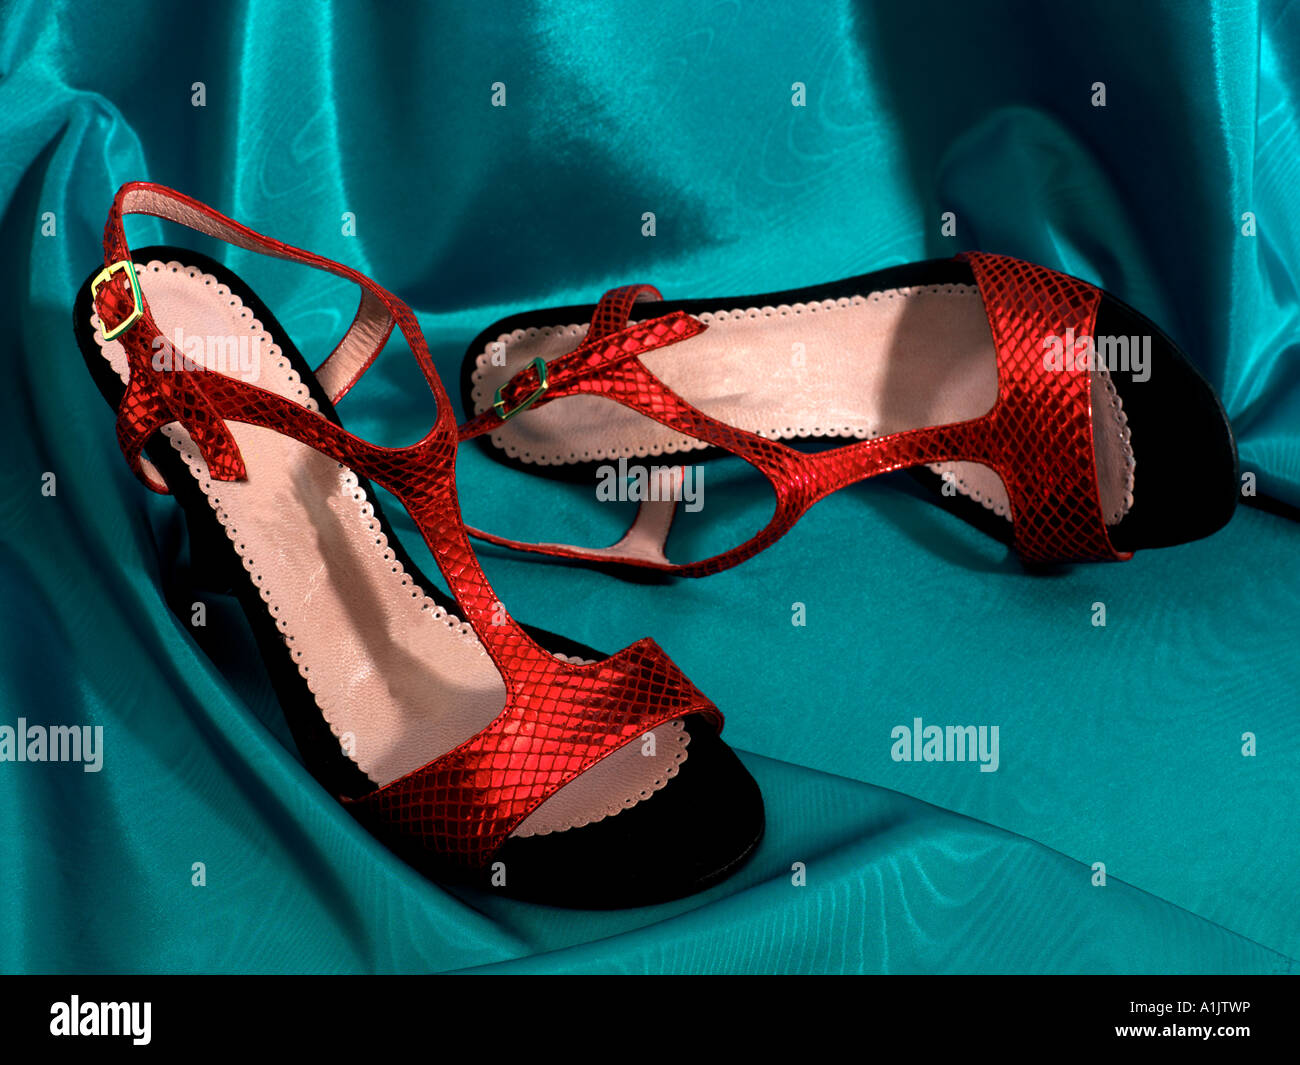 Chaussures Tango rouge sur la soie Turquoise Banque D'Images